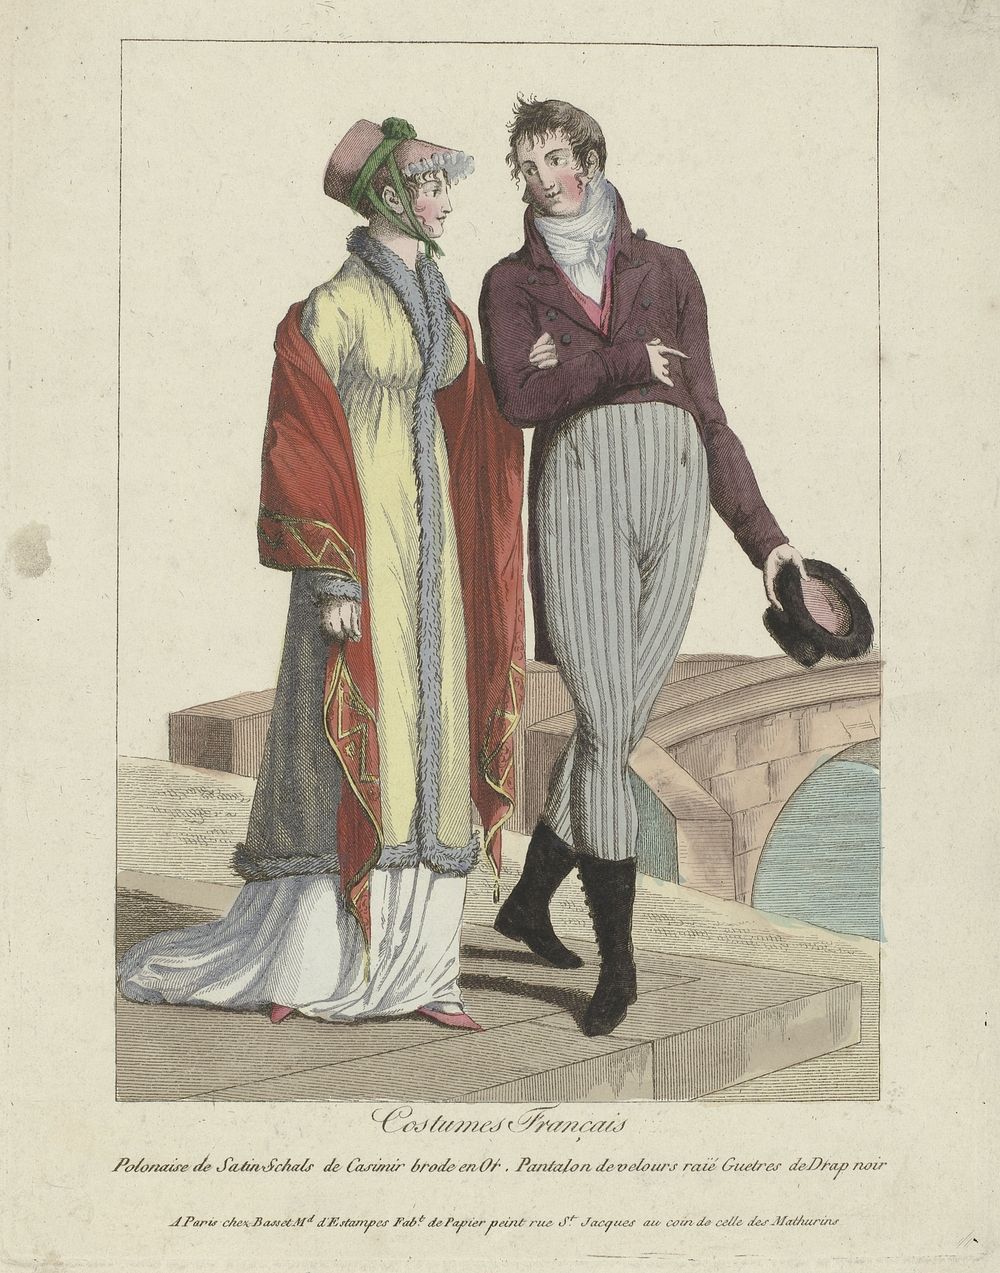 Costumes Français, 1799 : Polonaise de Satin (...) (c. 1799) by anonymous and Basset